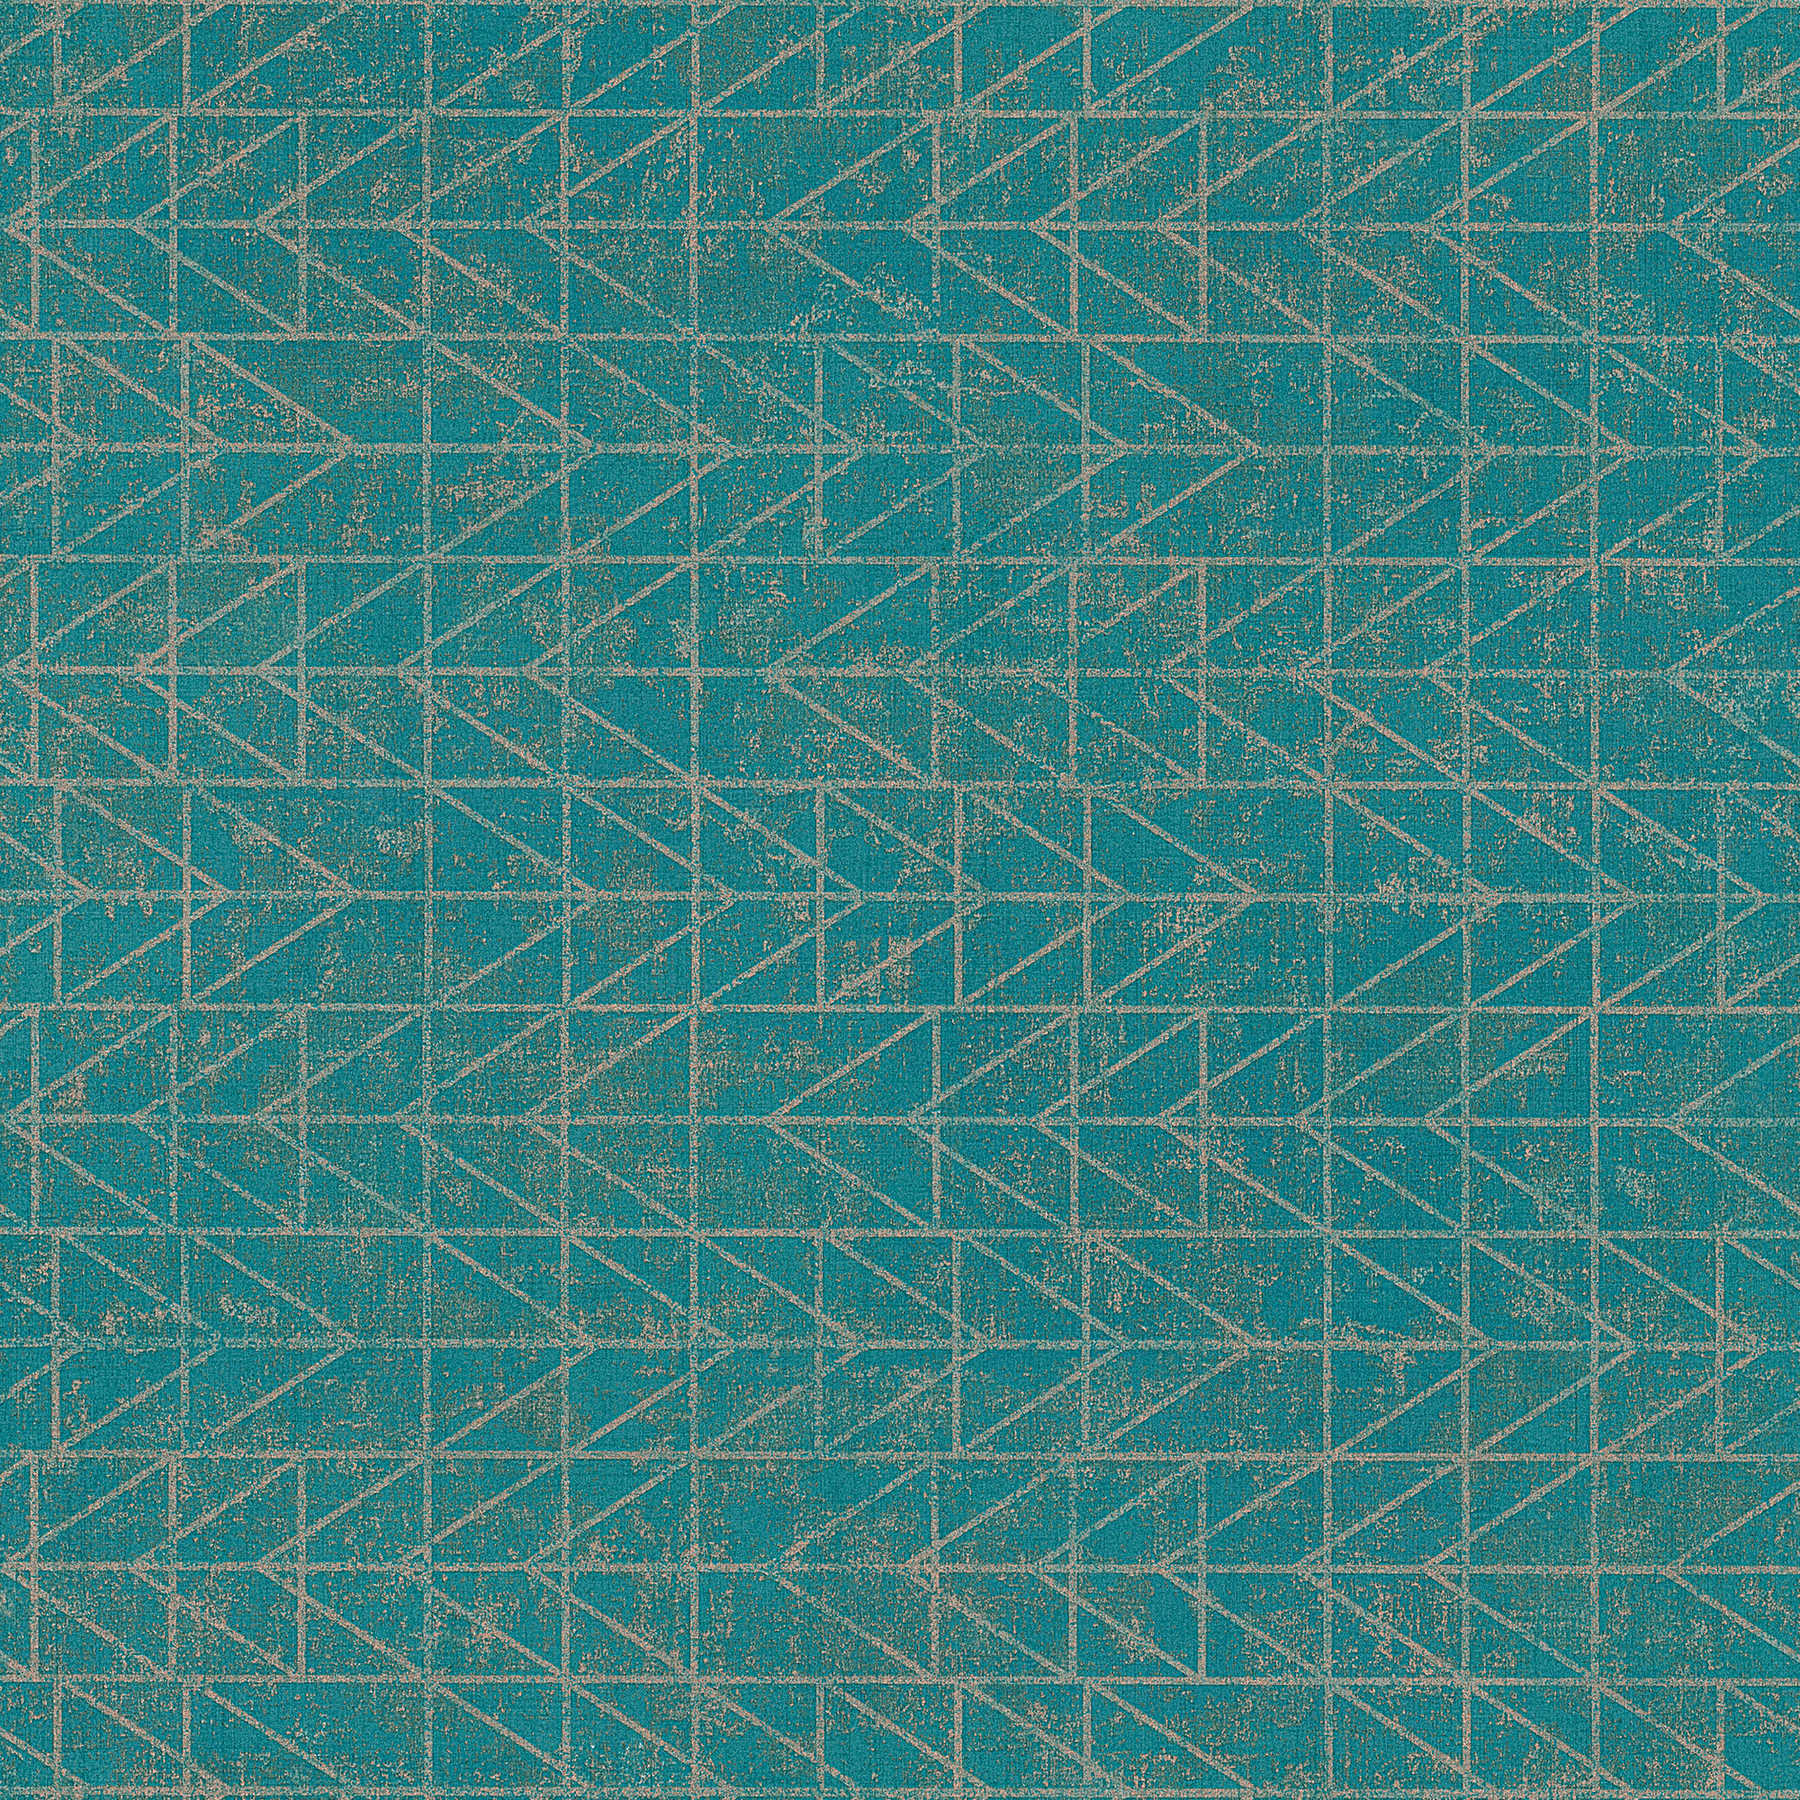 Türkise Ethno-Tapete mit Navajo-Muster und Metallic-Effekt – Blau, Grün, Gold
